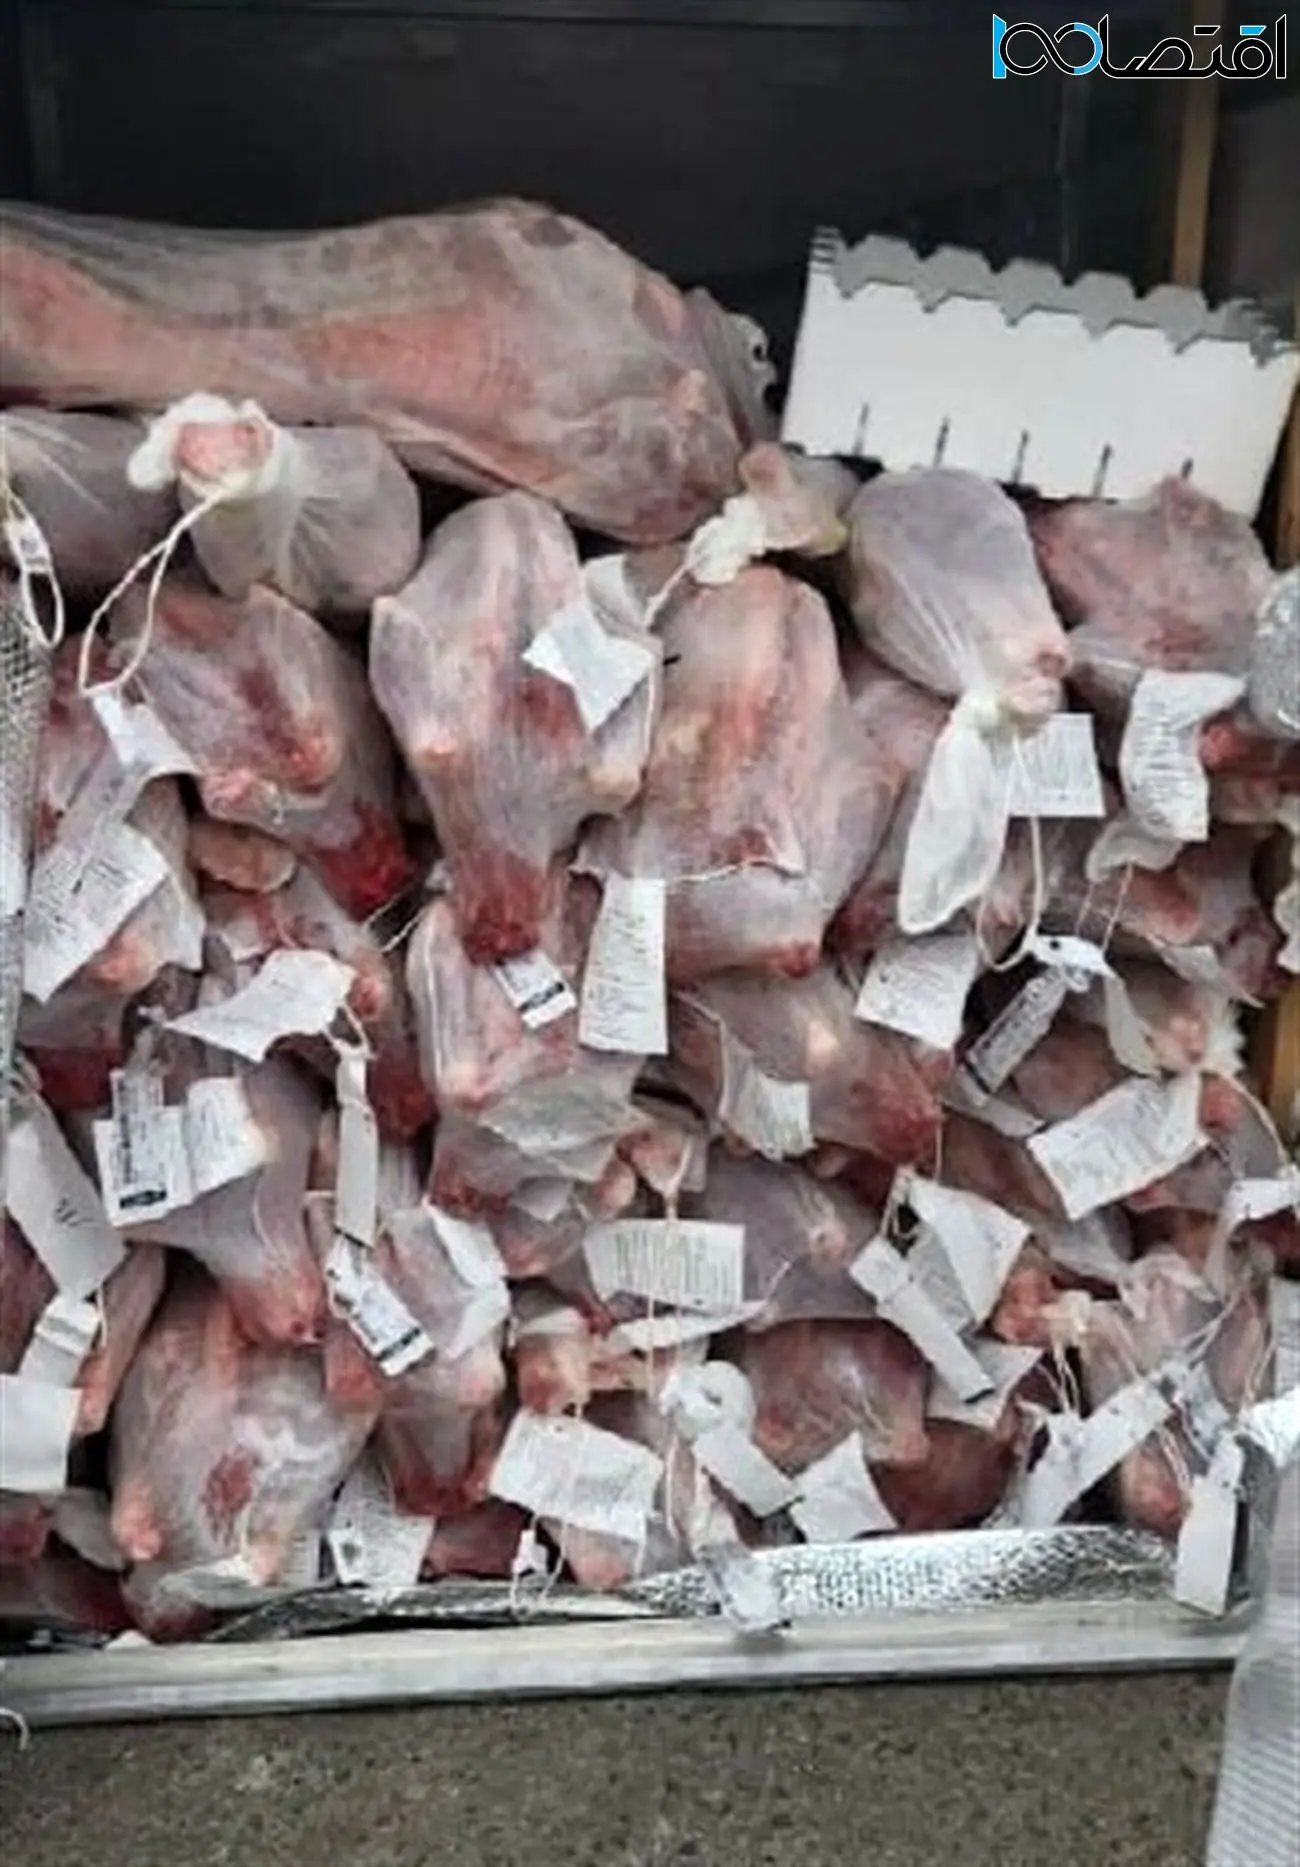 گوشت استرالیایی از آسمان رسید / گوشت با کیفیت به مردم فروخته می شود؟